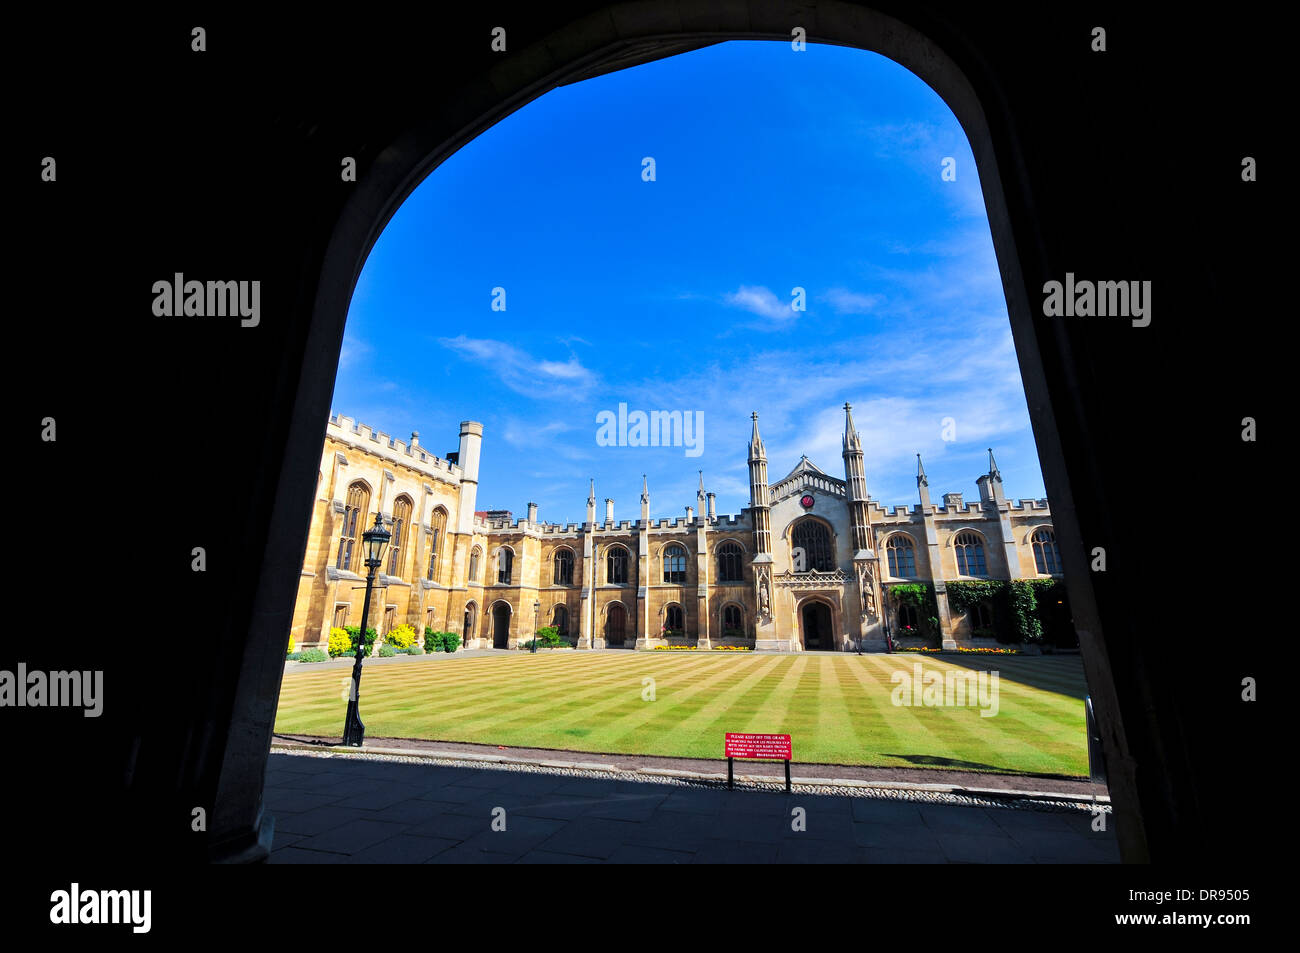 Cambridge university Stock Photo